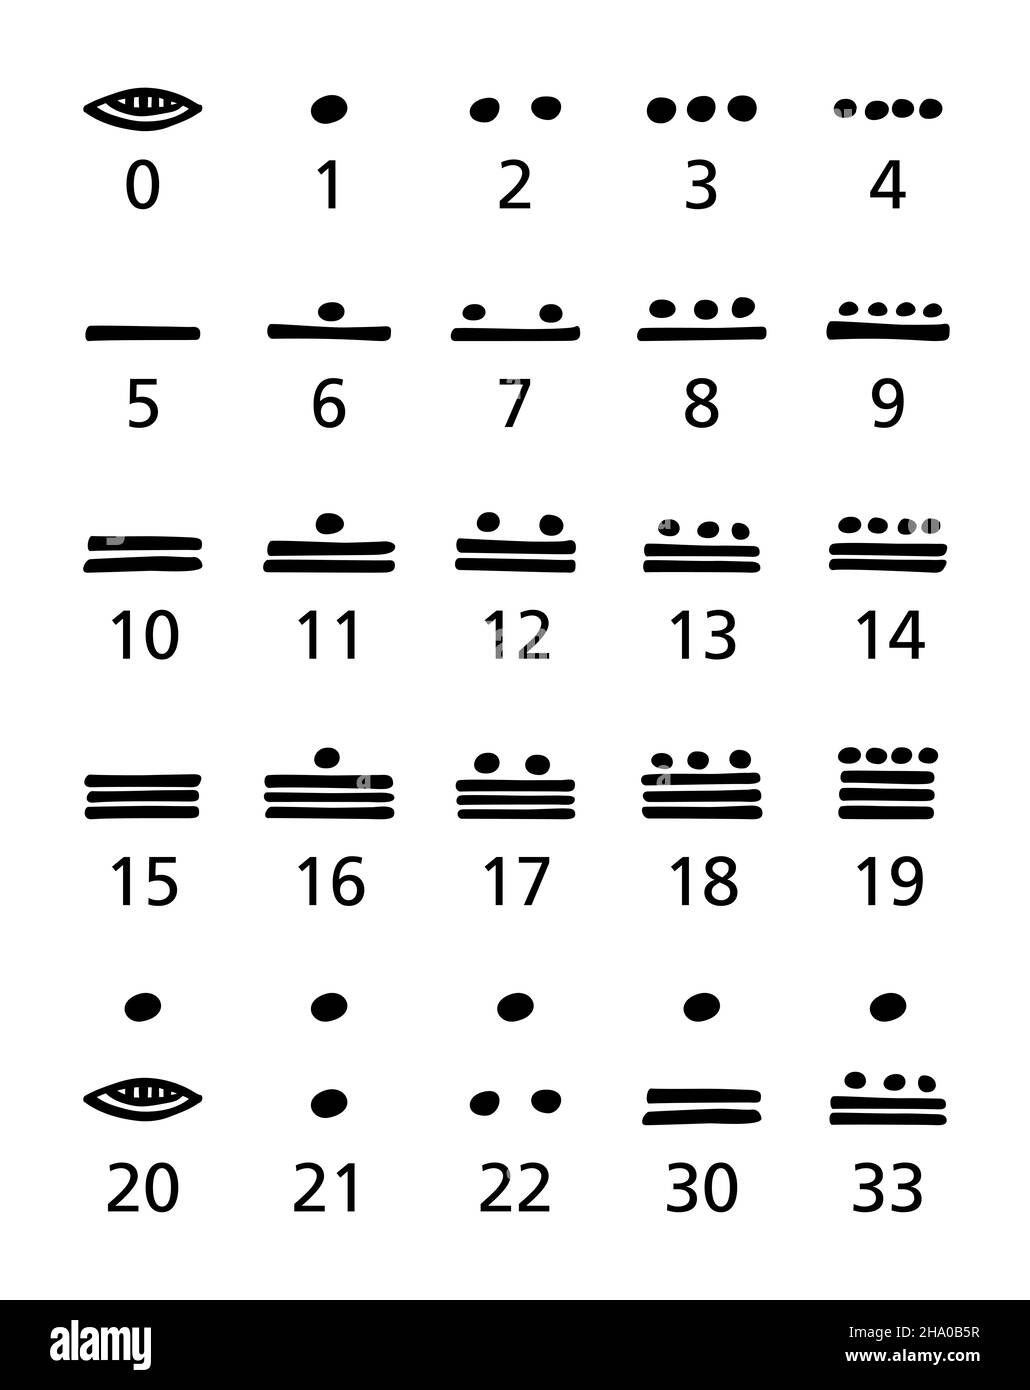 Système de numération maya Banque d'images noir et blanc - Alamy